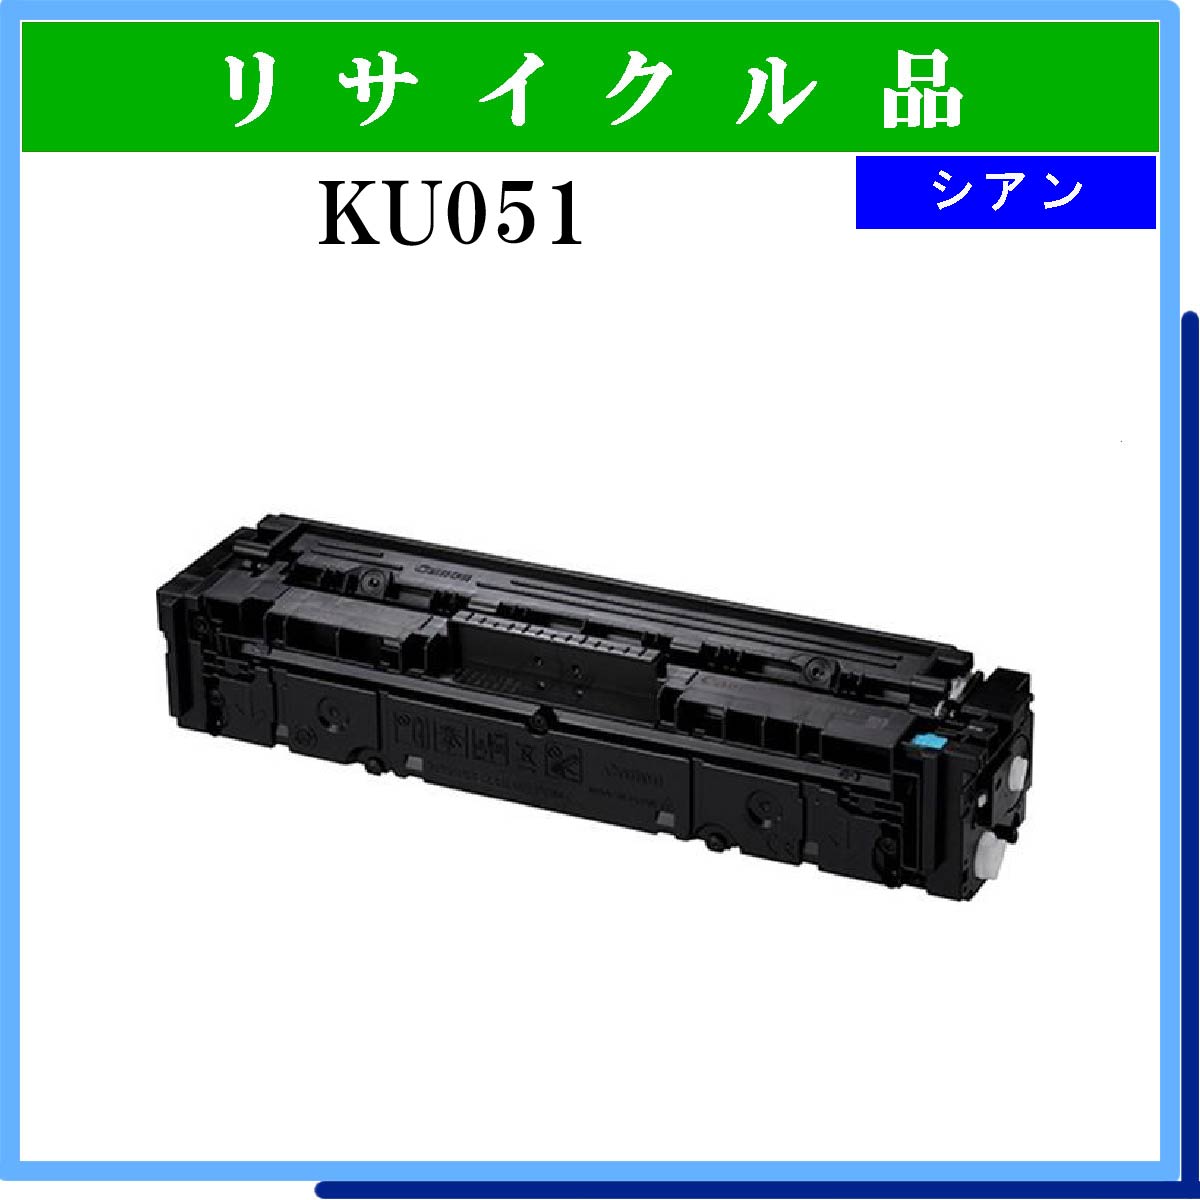 1320c用 (KU051)